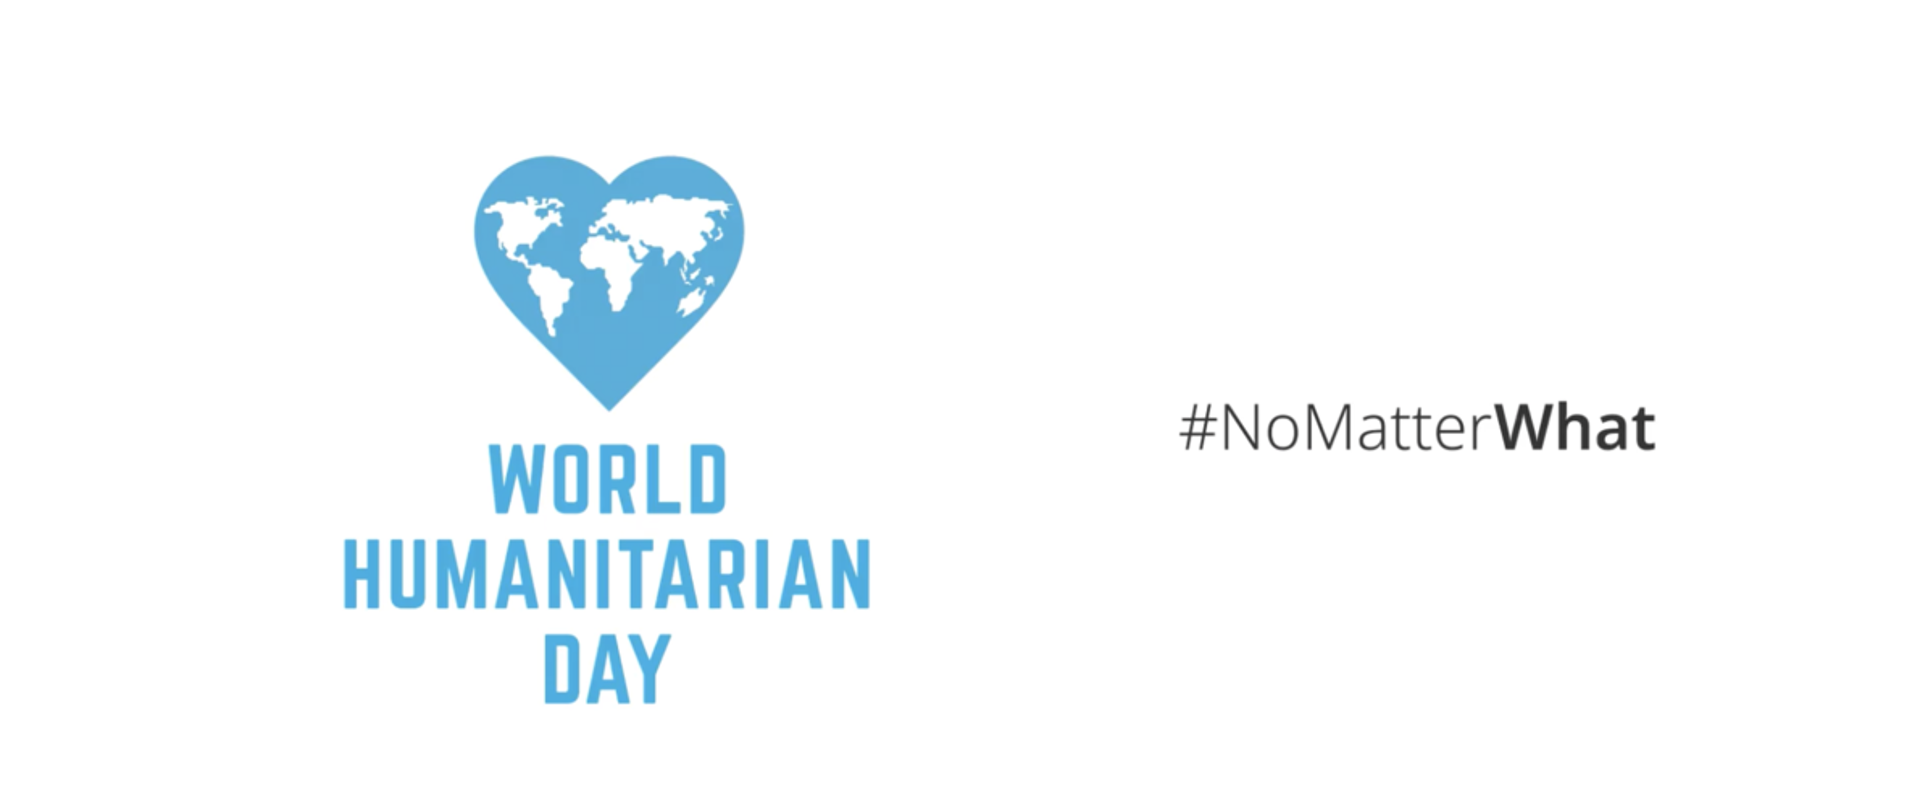 Niebieskie serce z konturami kontynentów i napis World Humanitarian Day oraz #NoMatterWhat